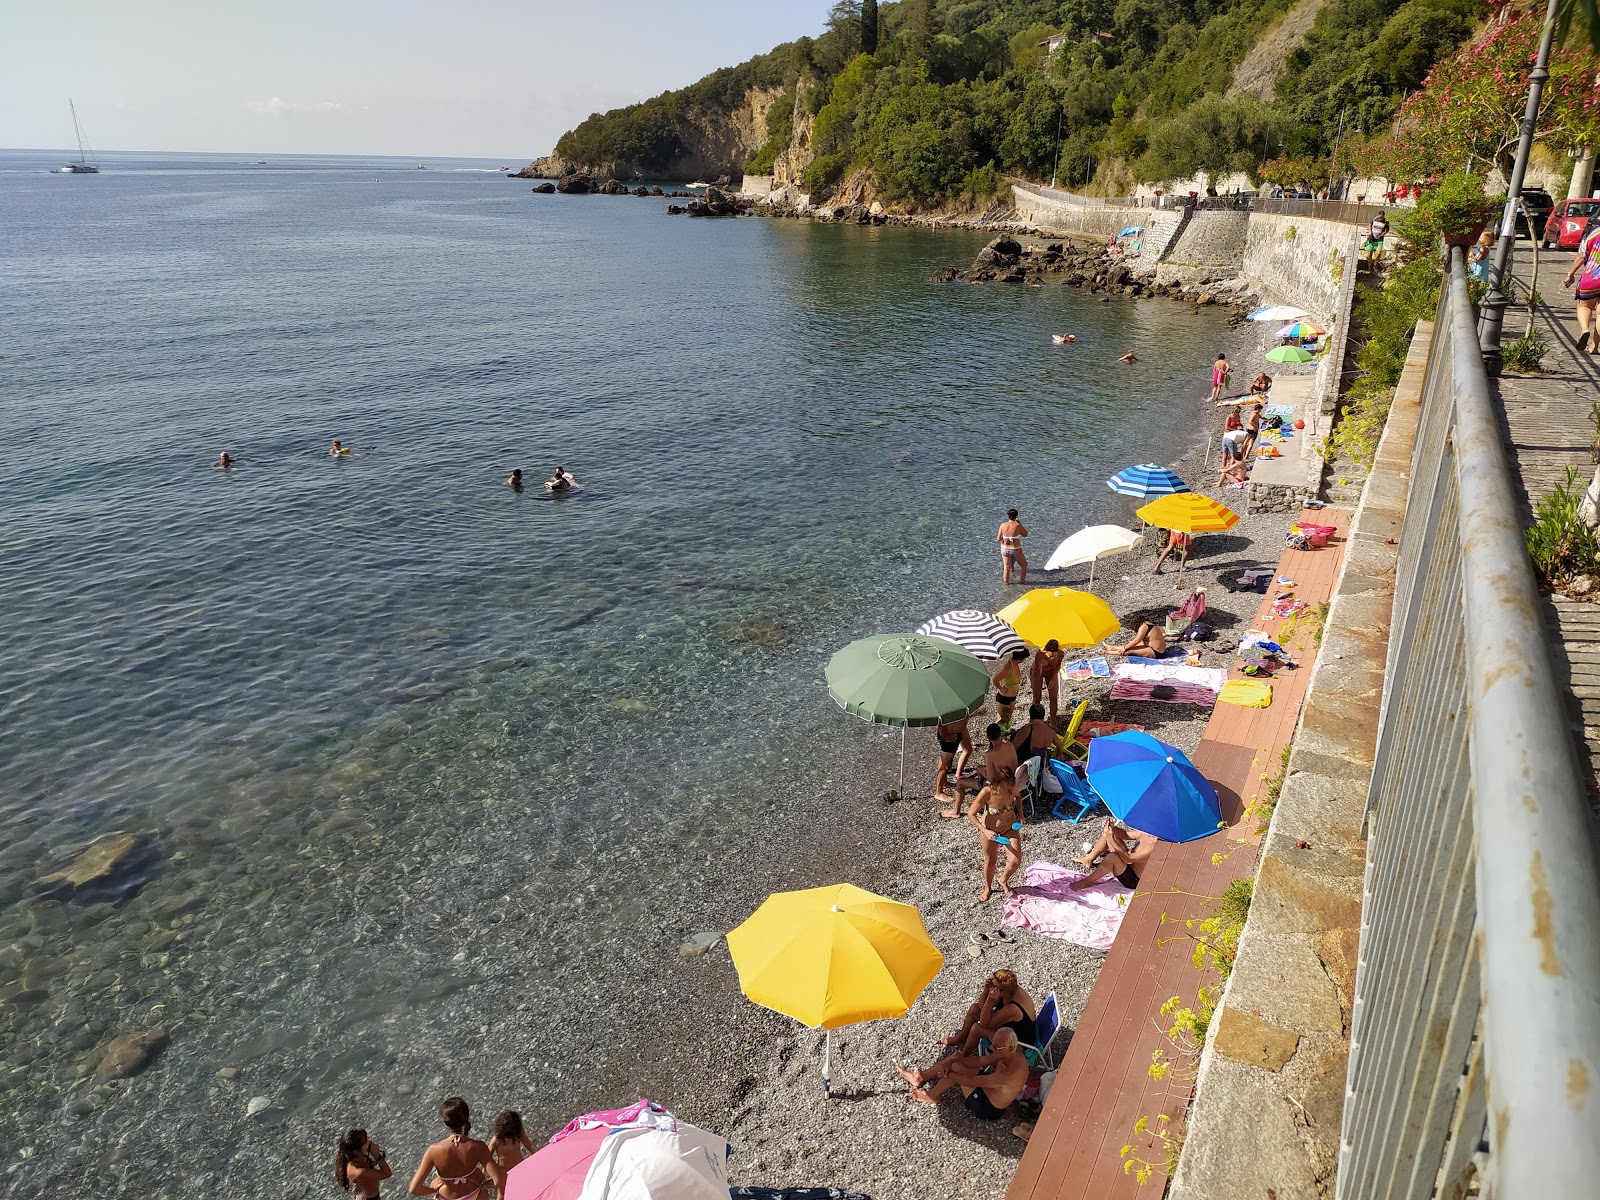 Photo of Spiaggia Della Tragara with gray pebble surface